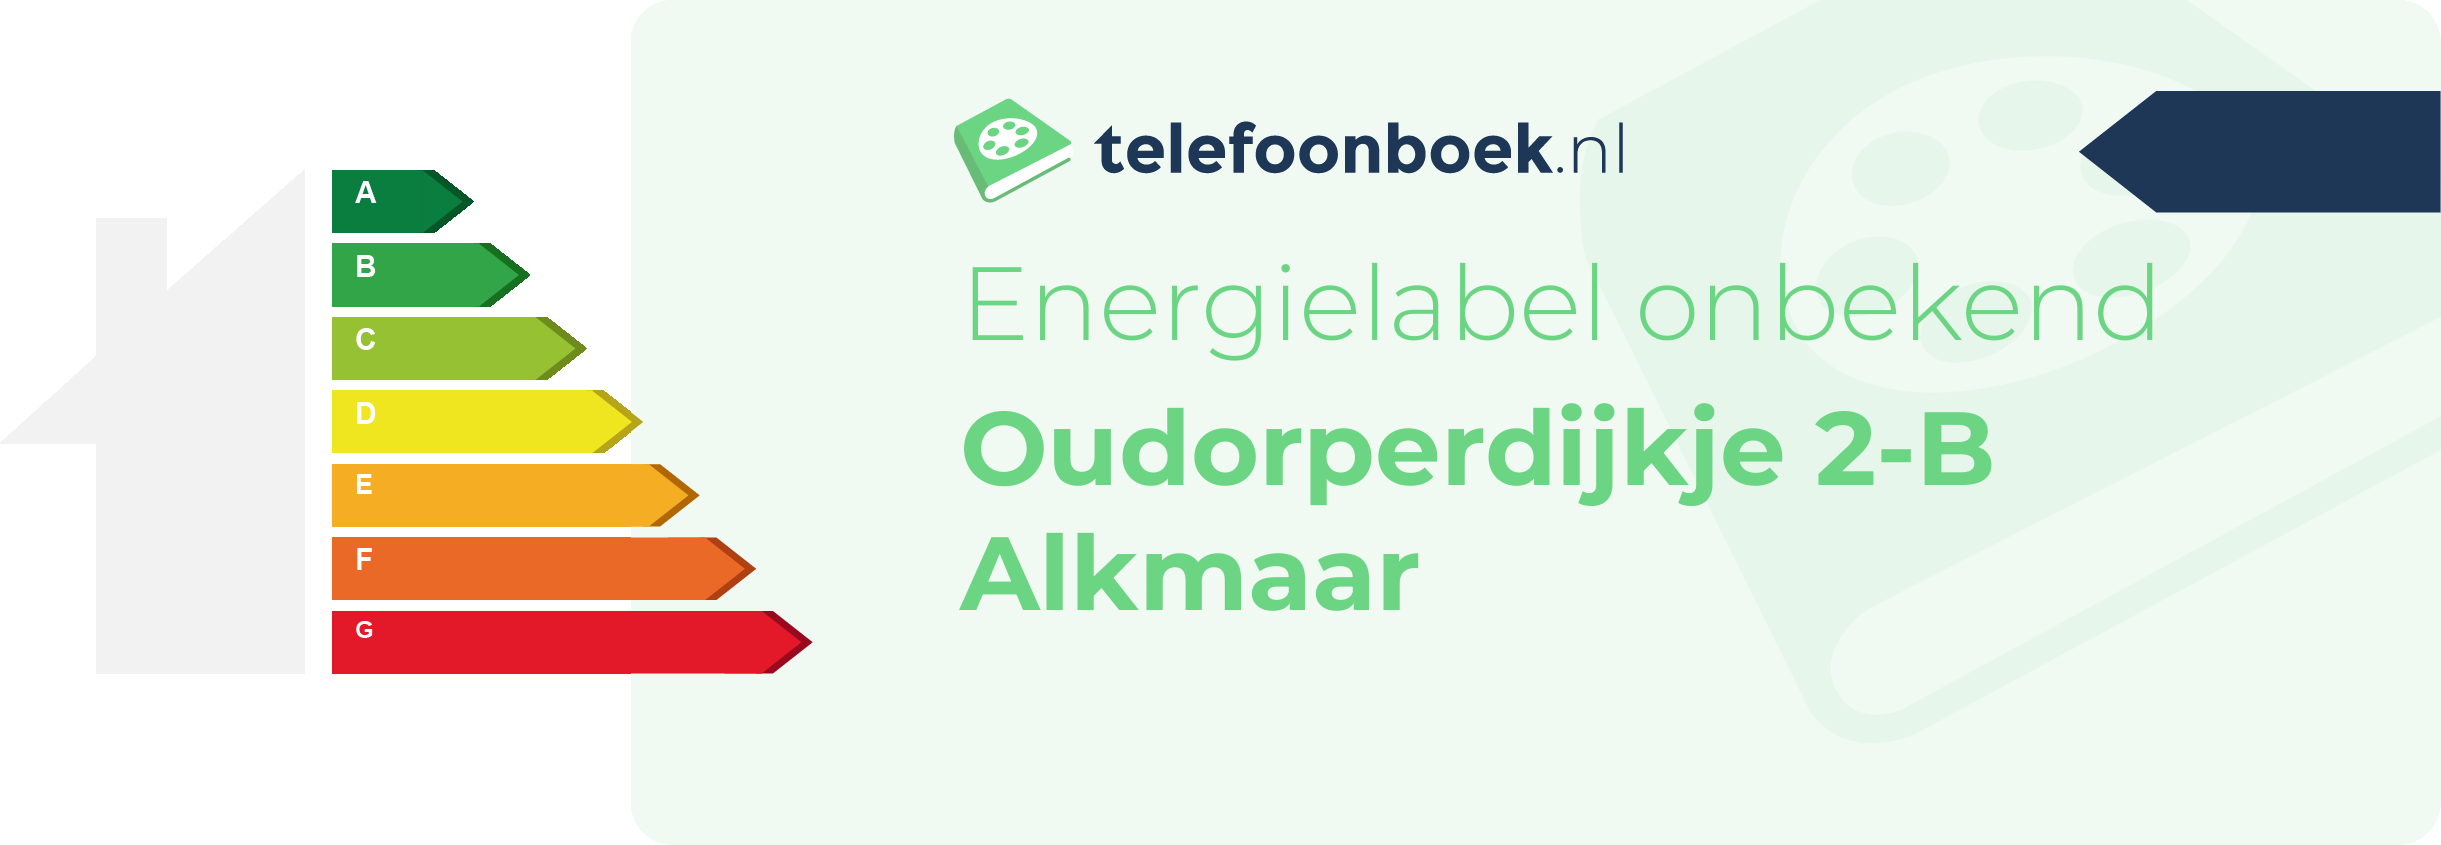 Energielabel Oudorperdijkje 2-B Alkmaar